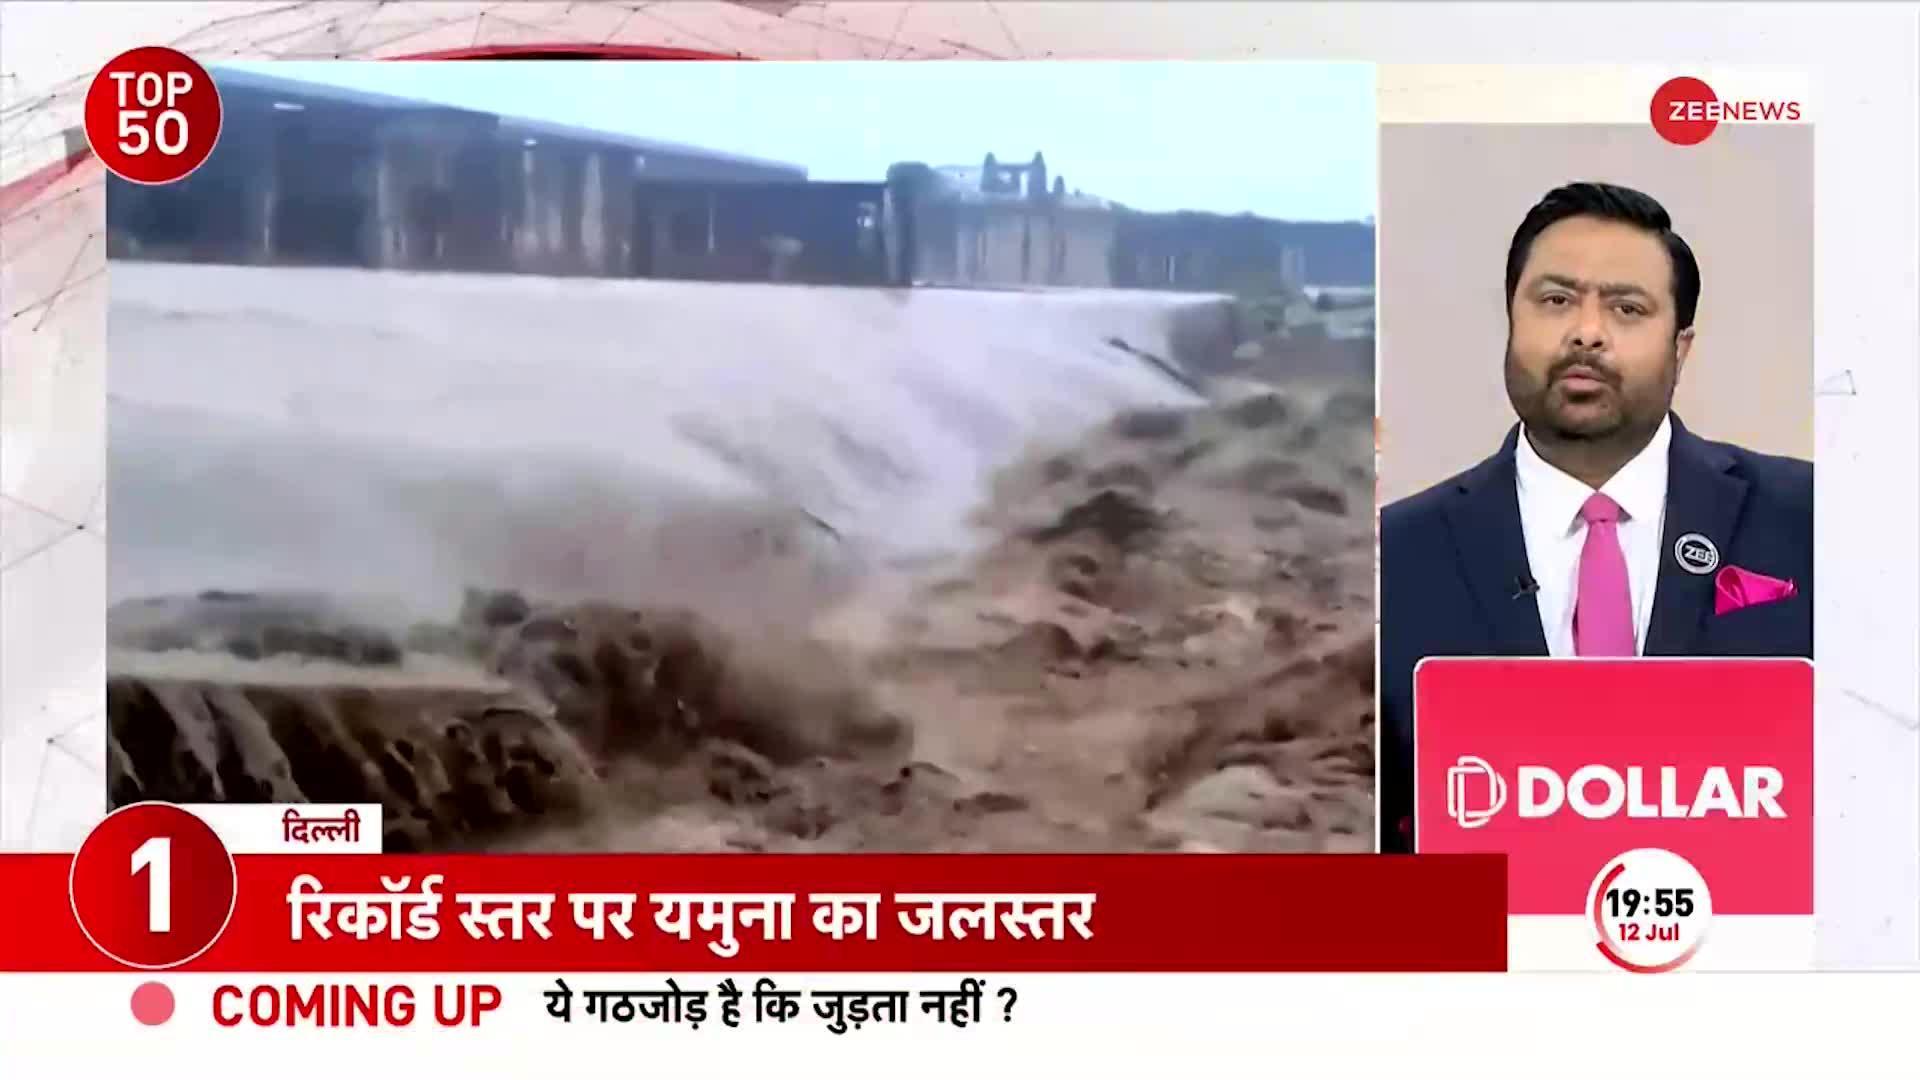 TOP 50: दिल्ली बढ़े 'डेंजरस' पानी से दिल्ली में आएगा 'जल' जला, रिंग रोड तक पानी पहुंचा। Delhi Flood